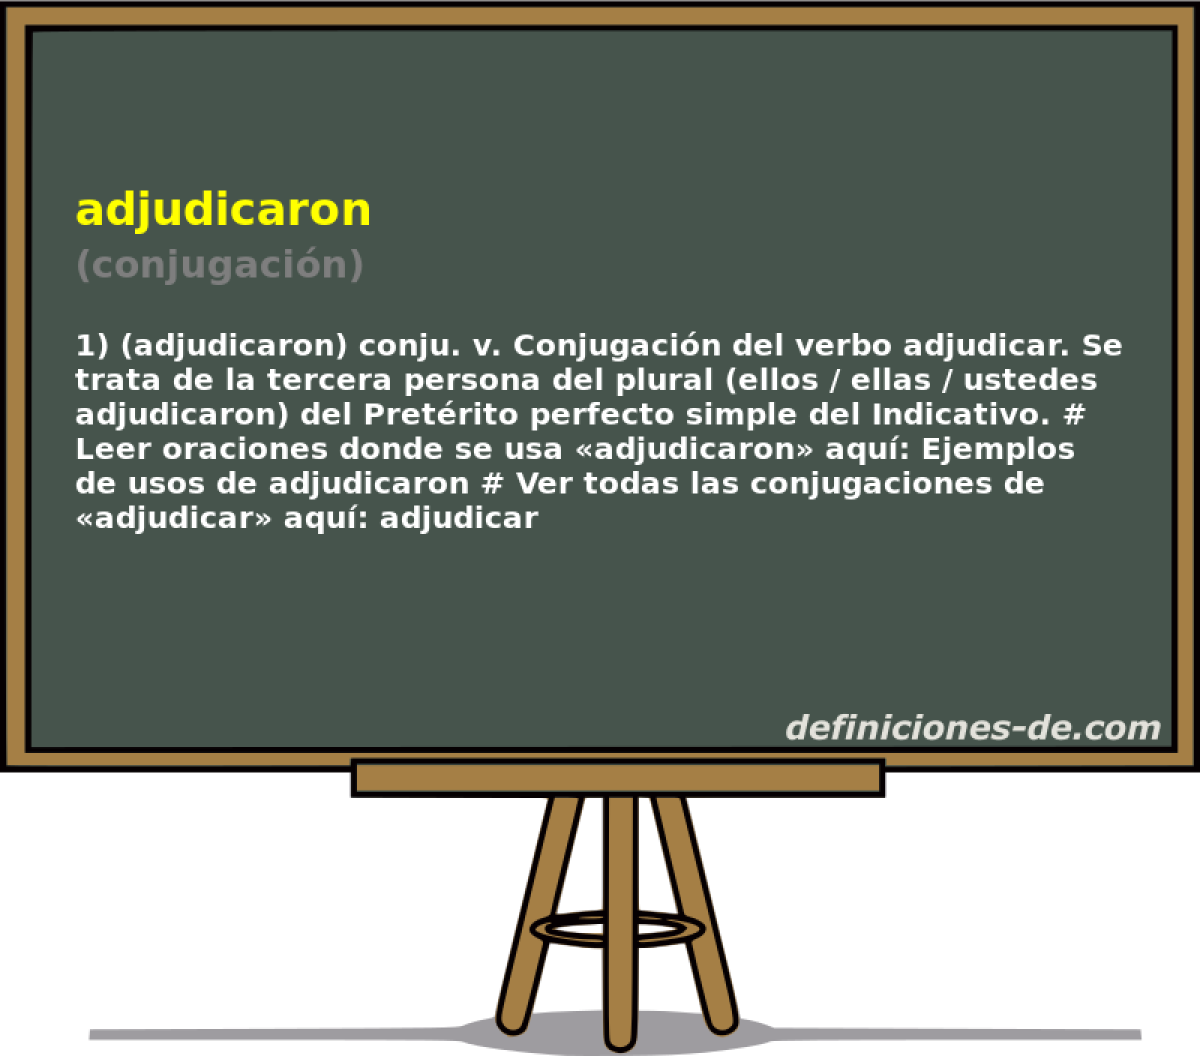 adjudicaron (conjugacin)